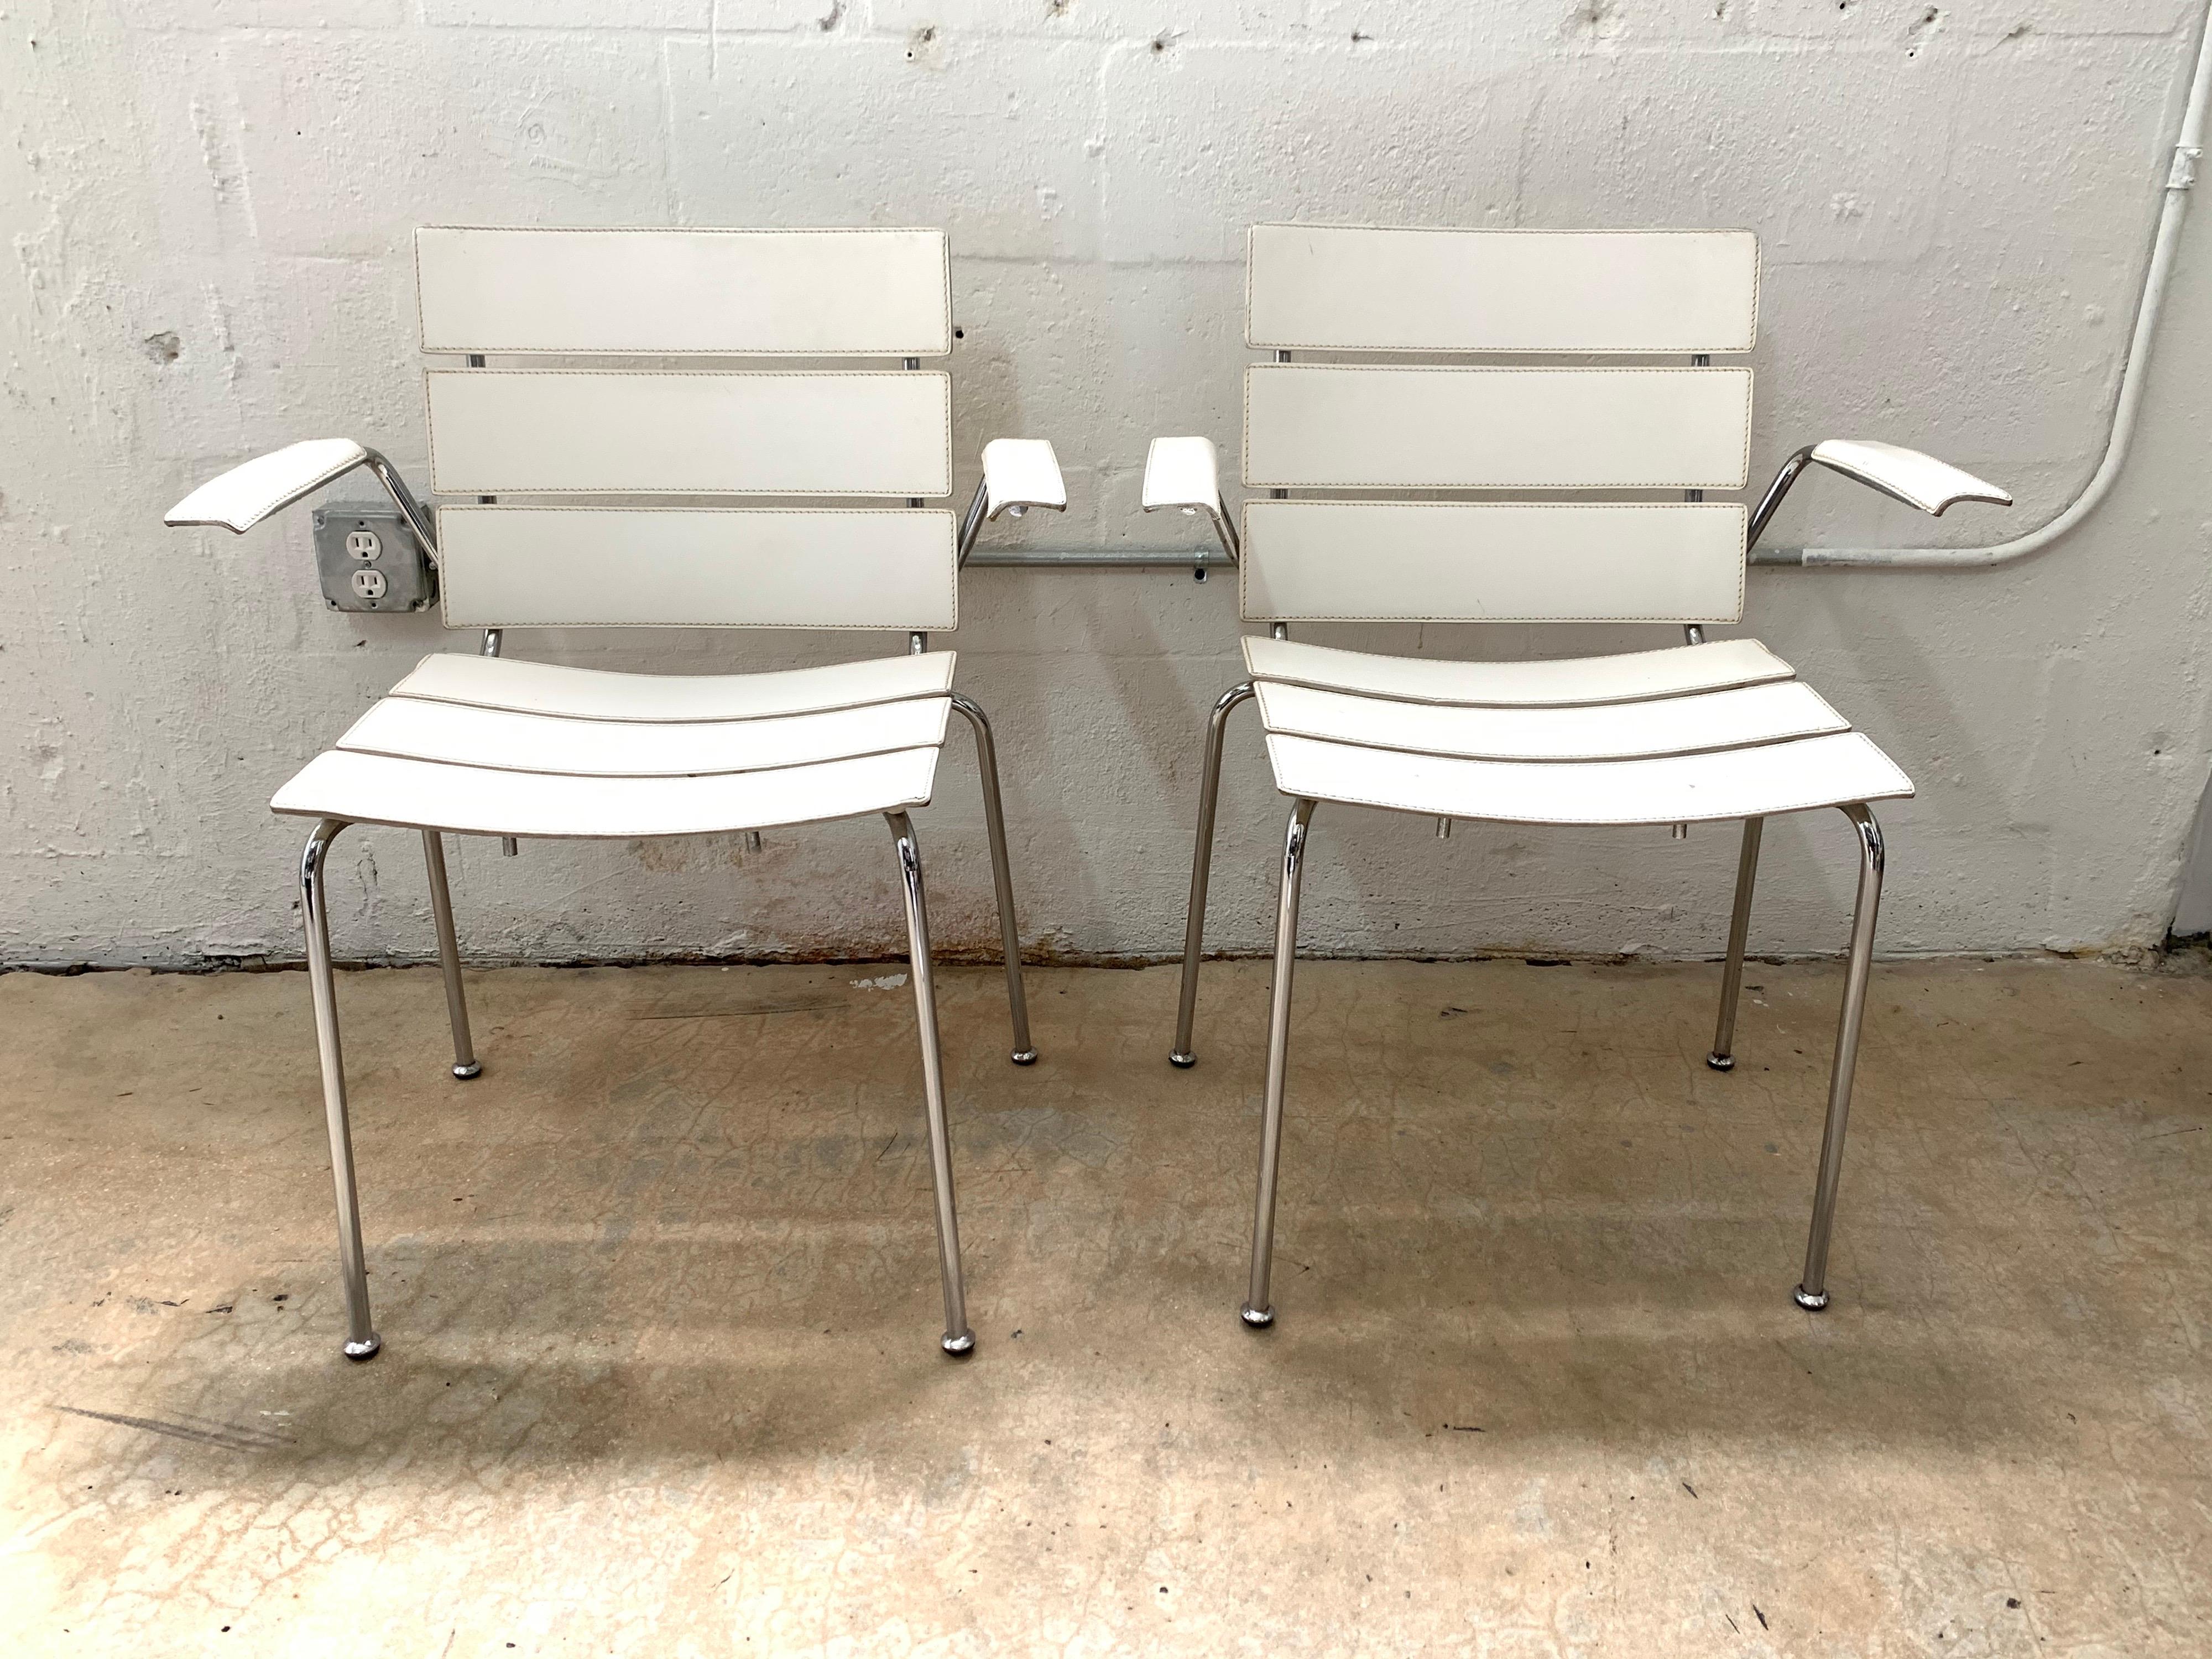 Zwei seltene Stühle mit Sitz, Rückenlehne und Armlehnen aus weißem genähtem Leder und Gestell aus verchromtem Stahl, entworfen von Giancarlo Vegni für Fasem, hergestellt in Italien, 1999.